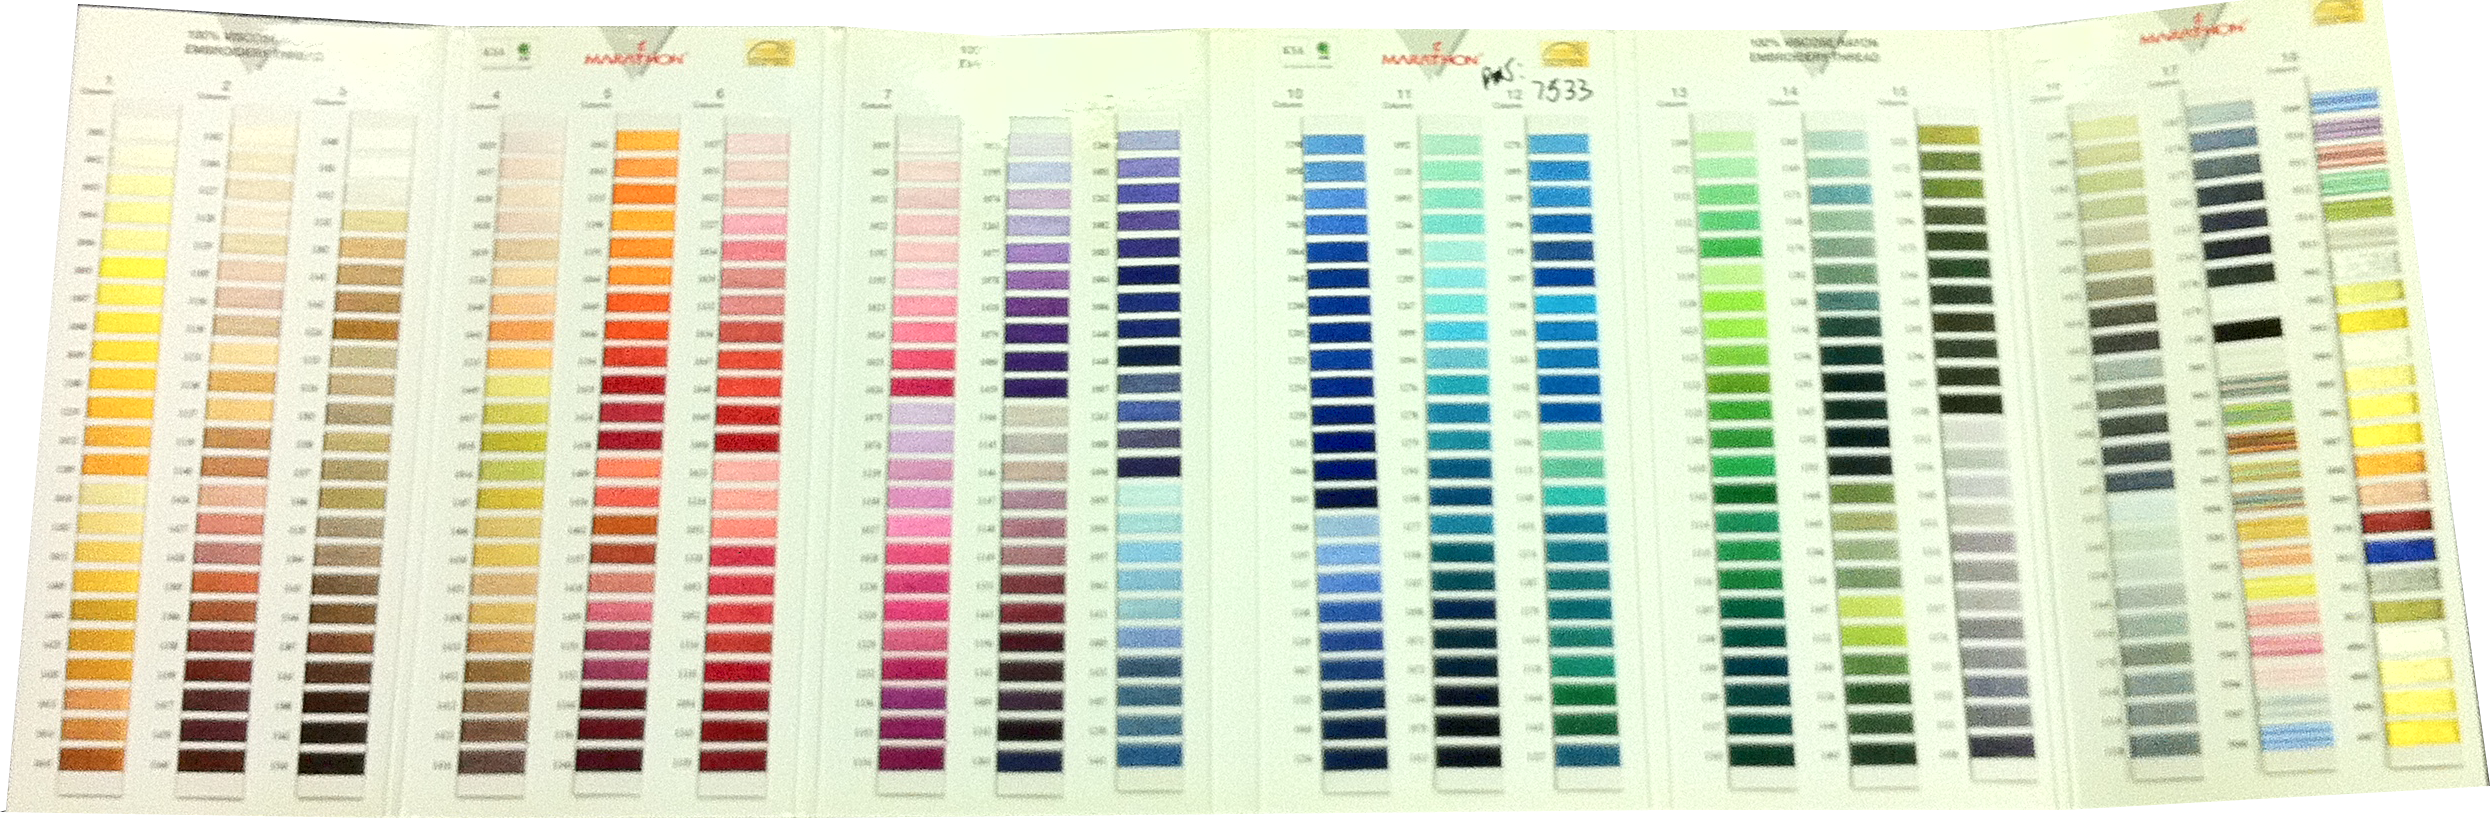 Pantone Textile Color Chart